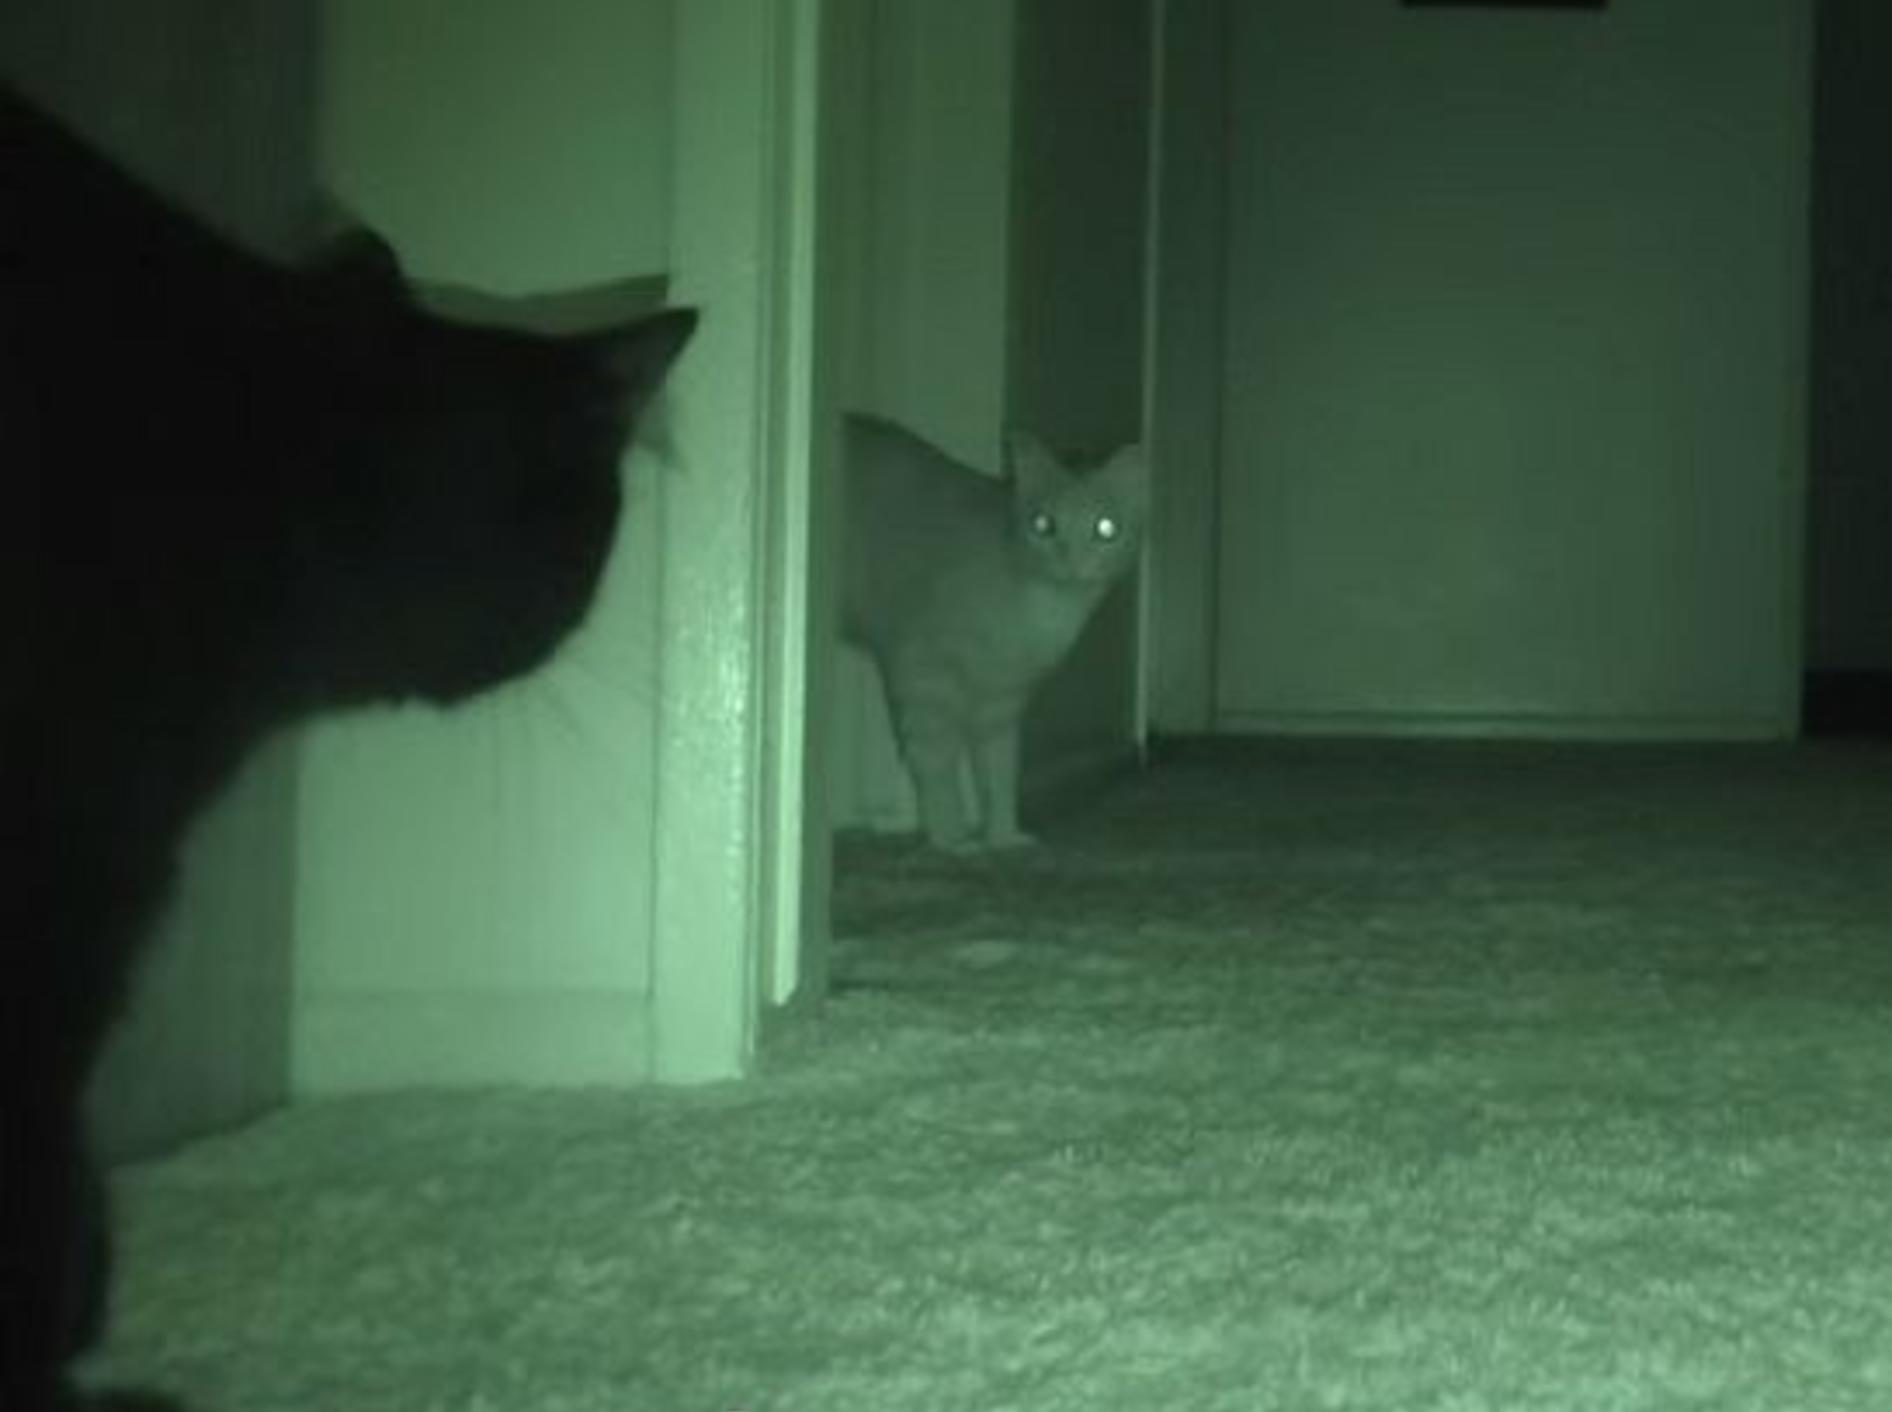 Nachts, wenn alle schlafen: Was machen die Katzen? – Bild: Youtube / Cole and Marmalade